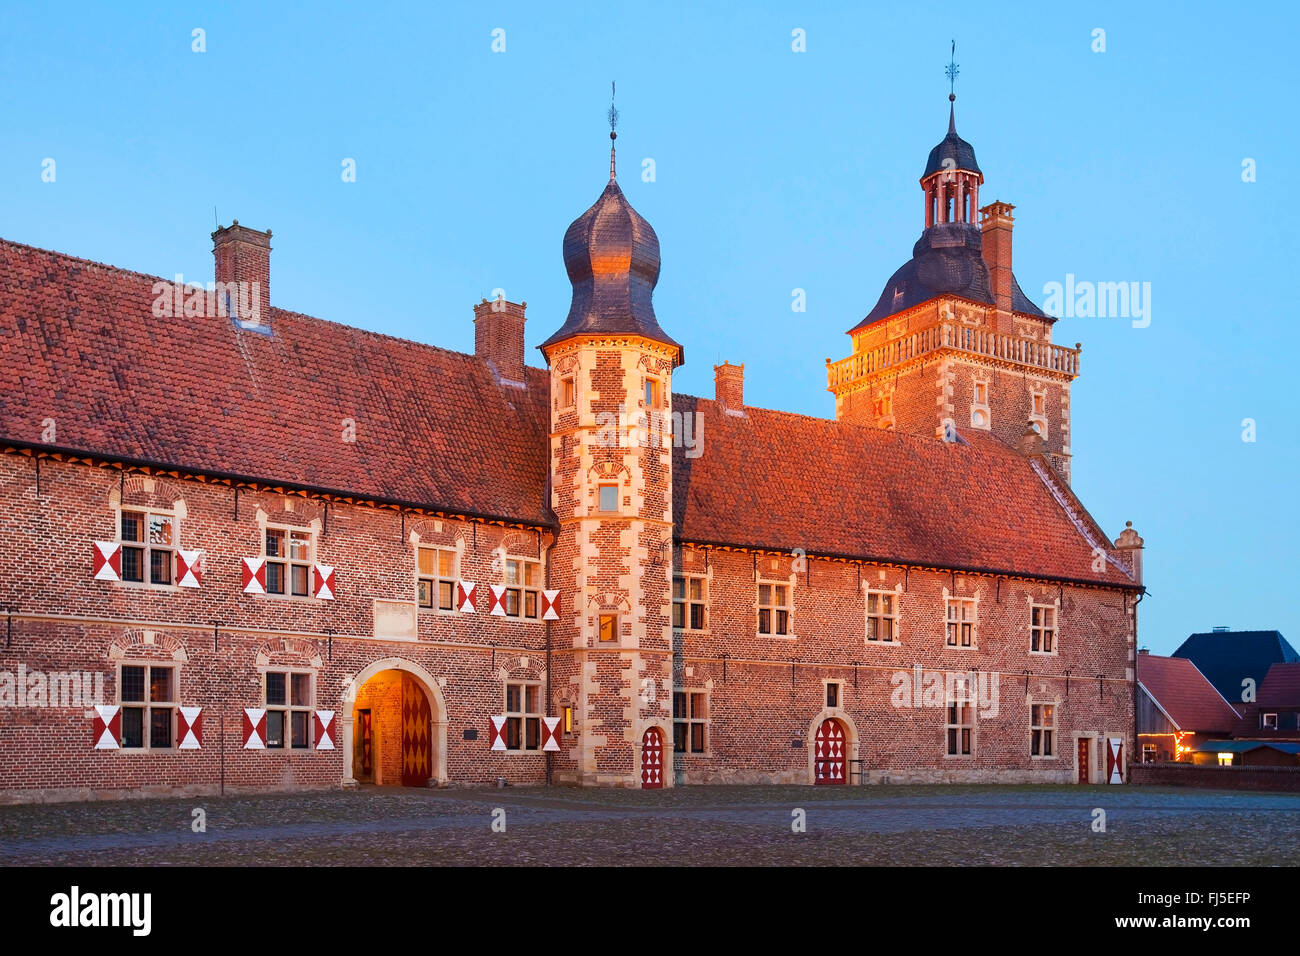 Raesfeld castle, cortyard with west wing and astrologers tower, Germany, North Rhine-Westphalia, Muensterland, Raesfeld Stock Photo